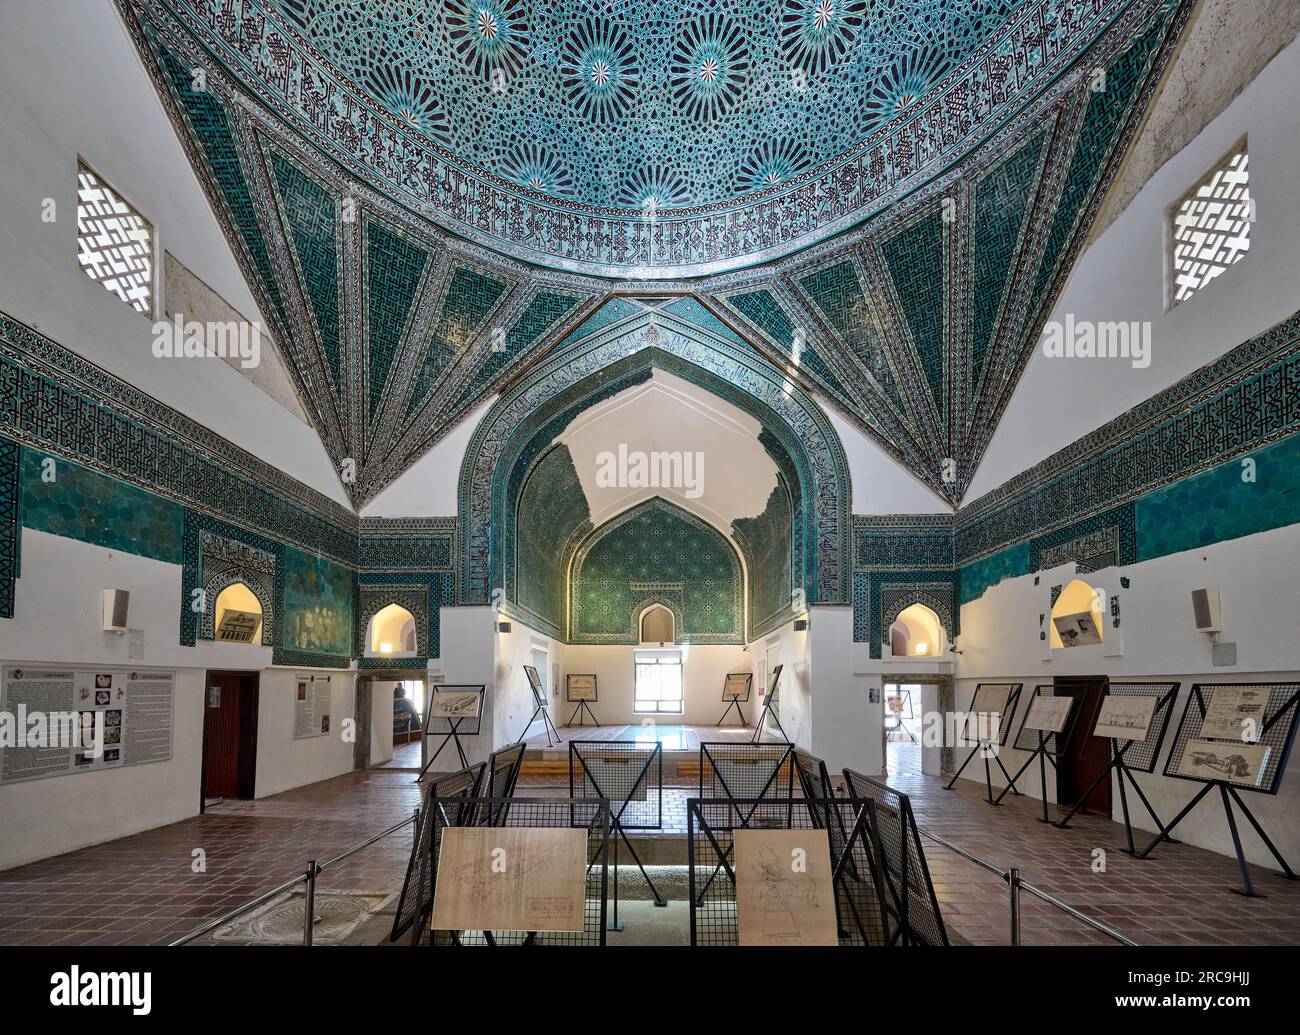 Innenaufnahme im Karatay Museum oder Kachelmuseum, Konya, Tuerkei    |interior of Karatay Madrasa ceramics museum, Konya, Turkey| Stock Photo